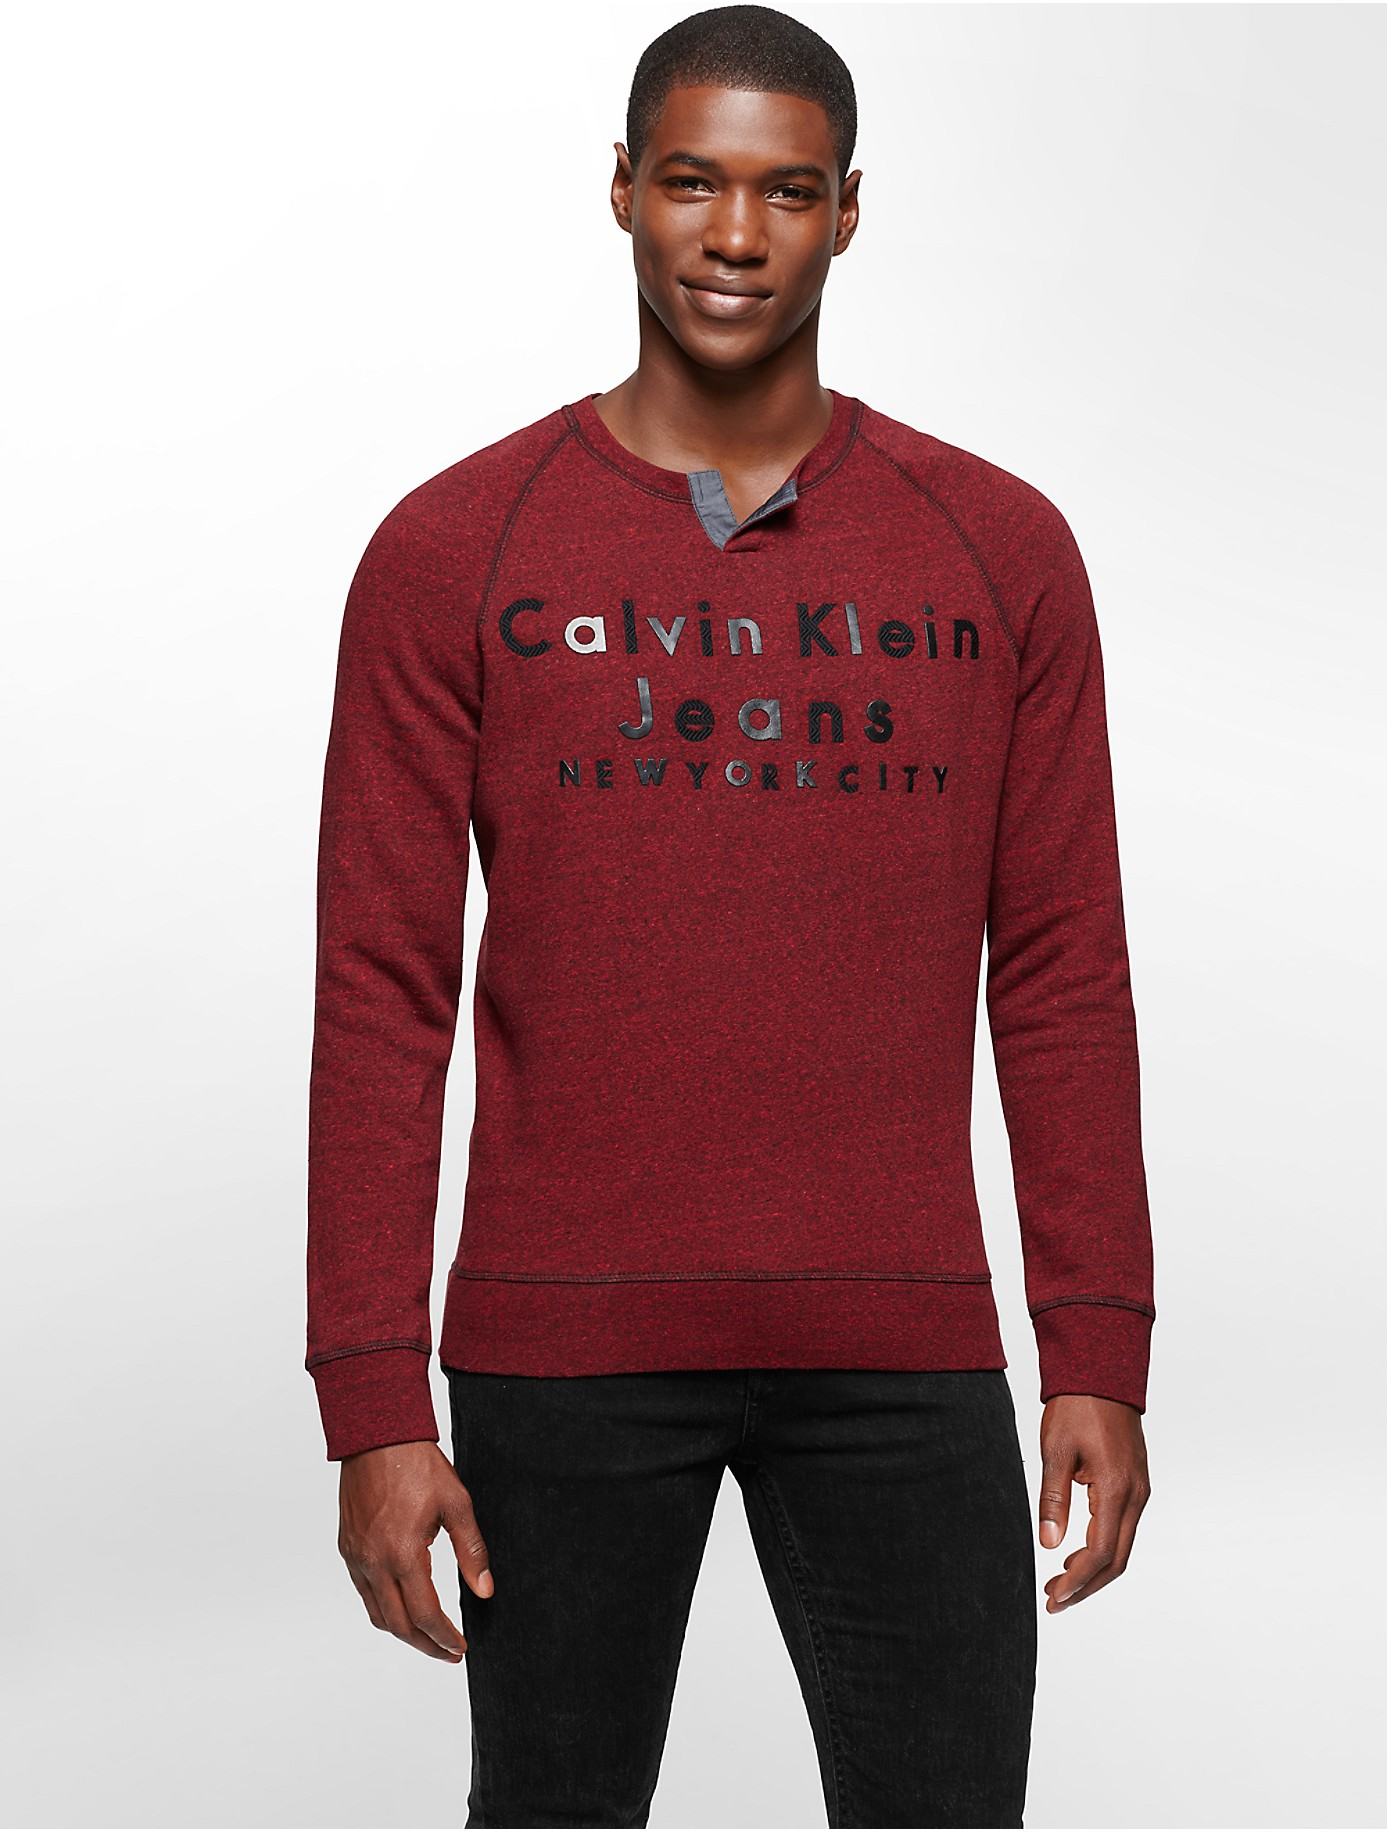 Lyst - Calvin Klein Jeans Slit Neck Logo Sweatshirt in Red